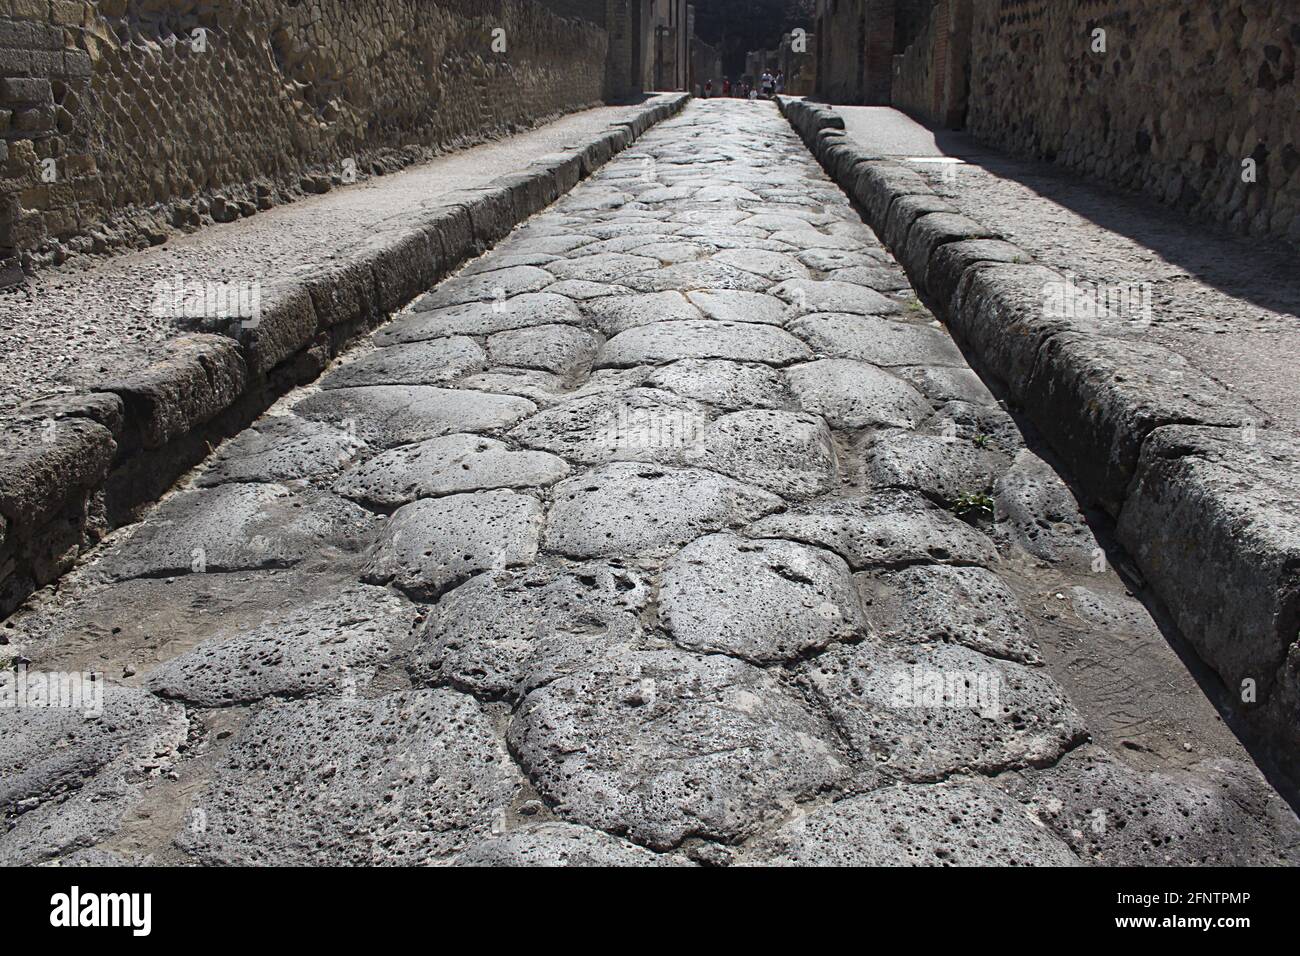 Vue sur une rue avec des trottoirs à Herculanum, un exemple parfait d'une ville romaine prospère enterrée comme Pompéi par l'éruption du Vésuve dans l'AD79. Banque D'Images